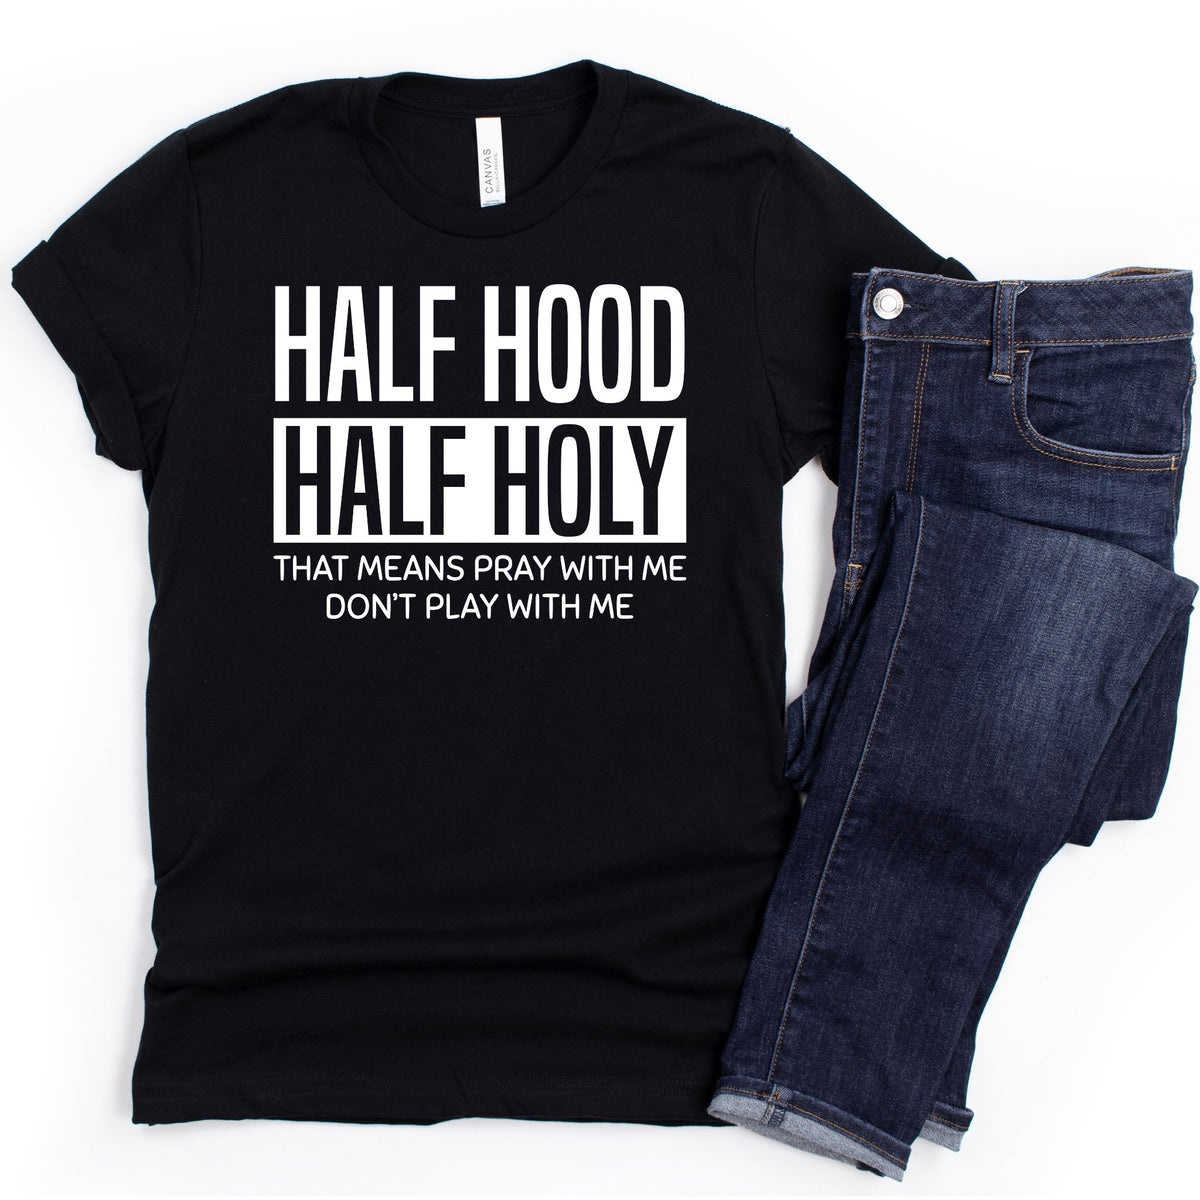 Half Hood Half Holy - Nola Charm